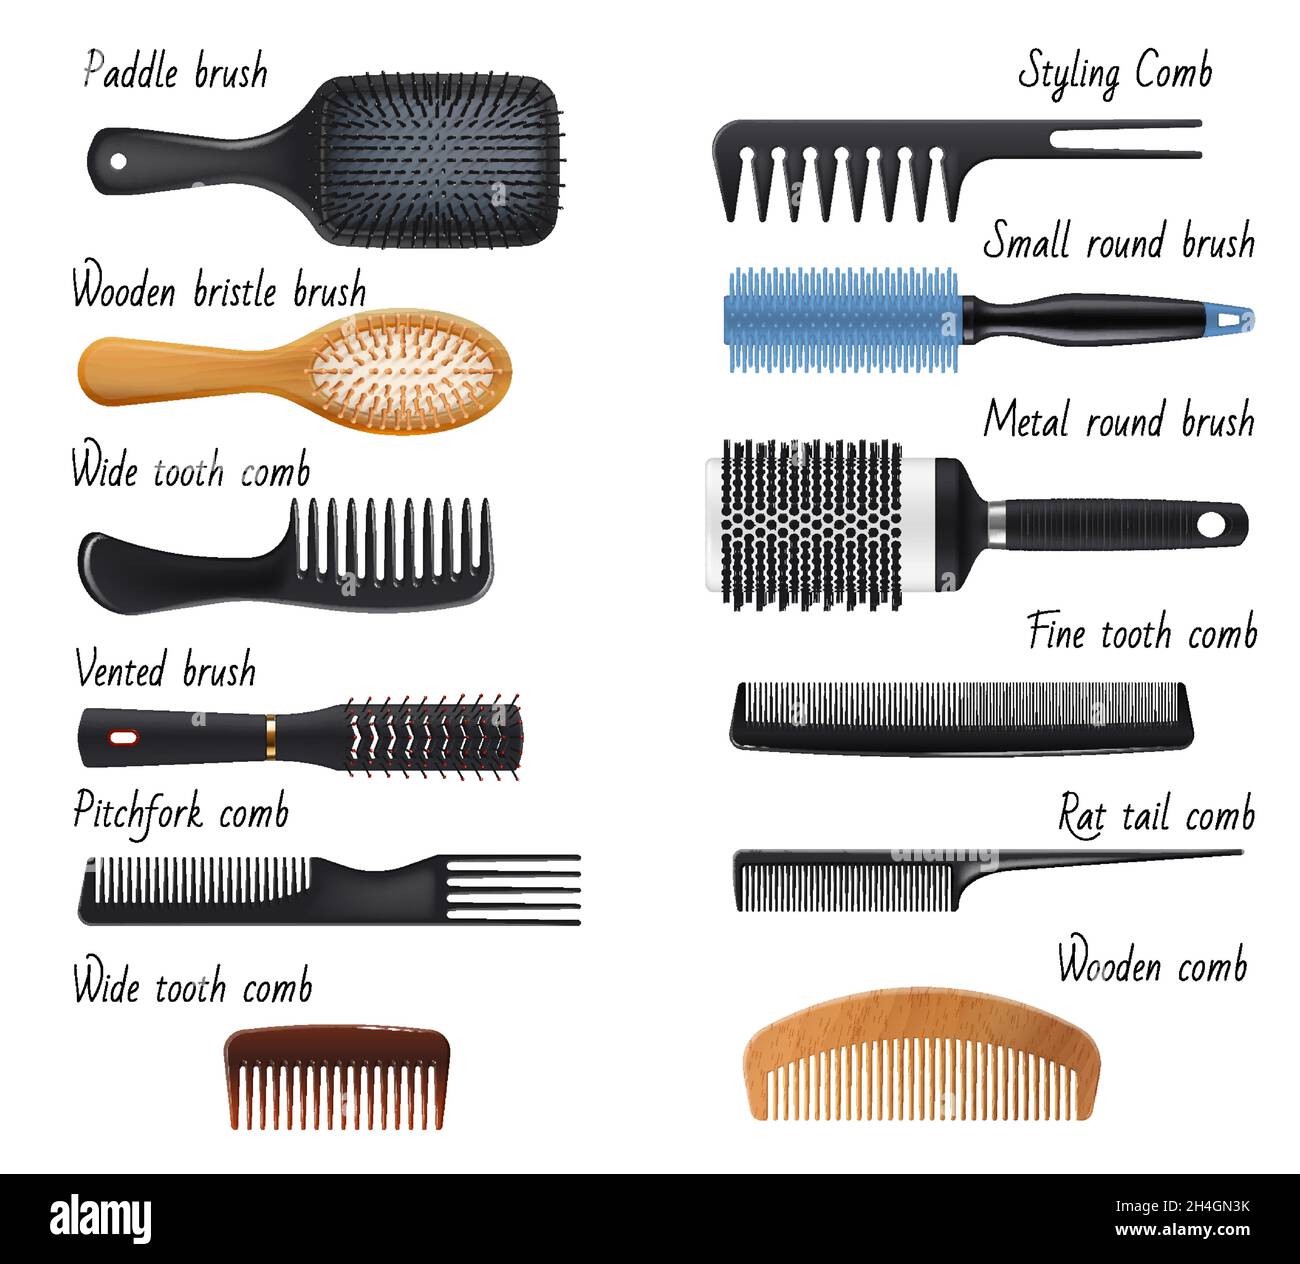 Haarkämme und Haarbürsten, Damenmode und Haarpflege-Vektor-Accessoires. Friseursalon Styling- und Haarbürstwerkzeuge, Holzborsten und Paddel Stock Vektor